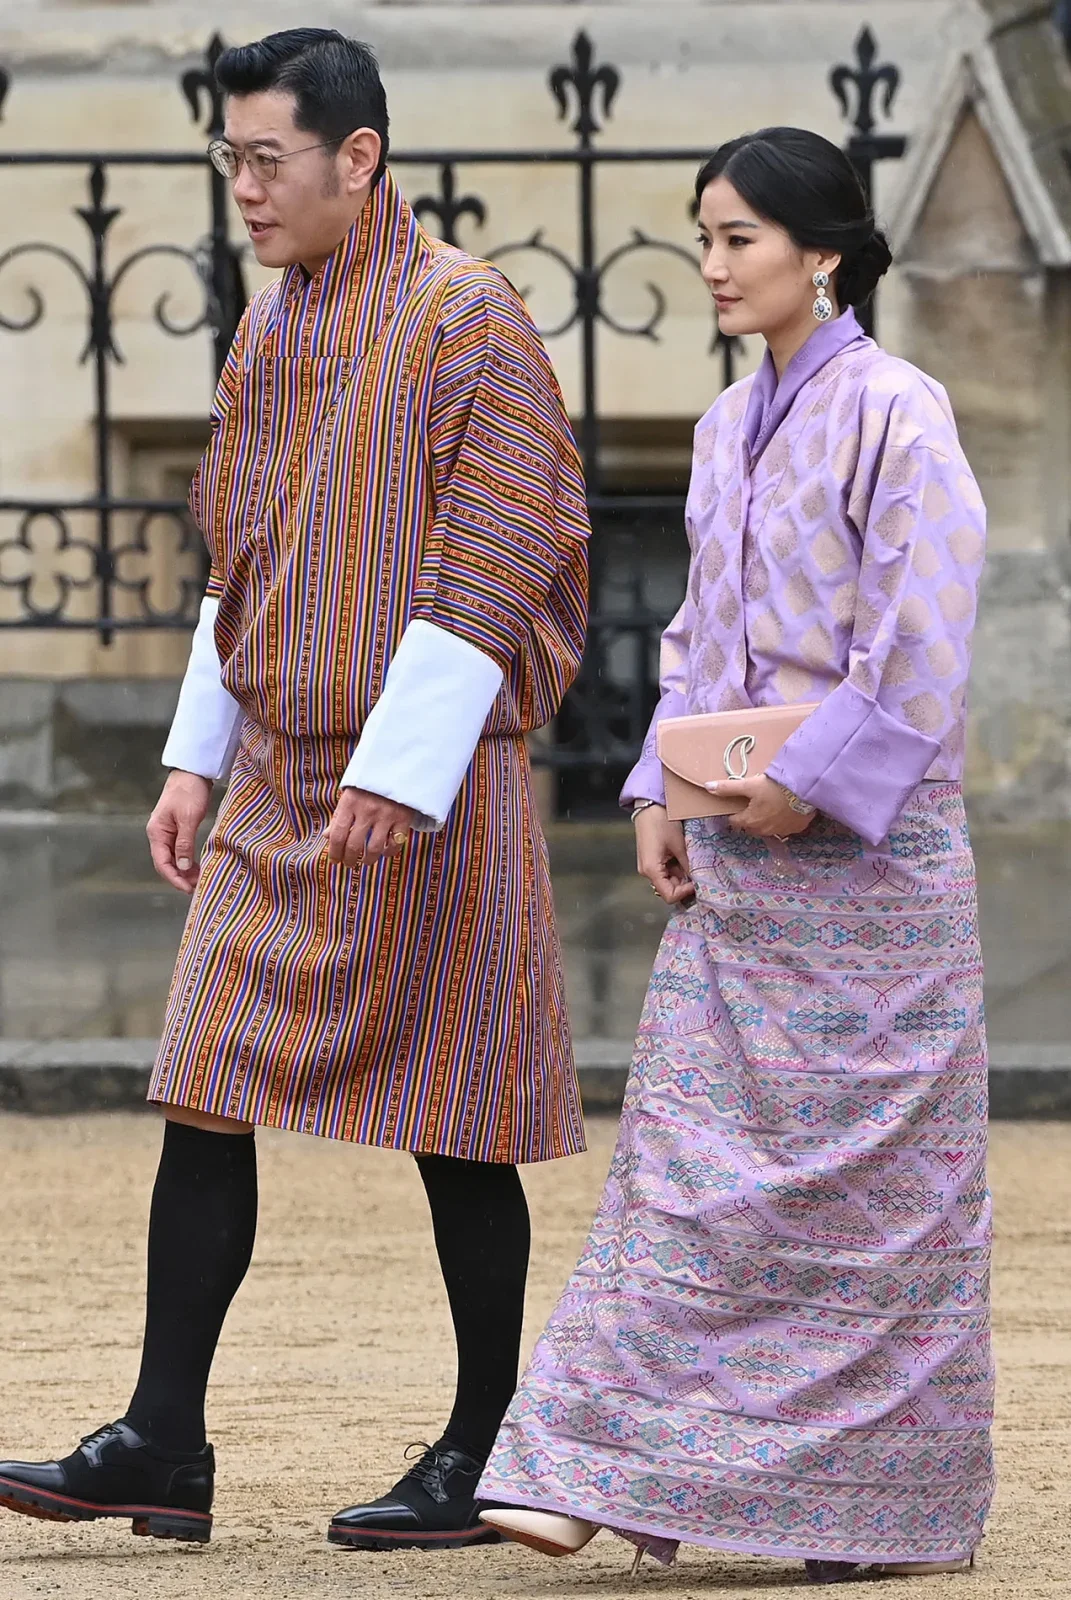 สมเด็จพระราชินีเจตซุน เพมา วังชุก (Queen Jetsun Pema of Bhutan)